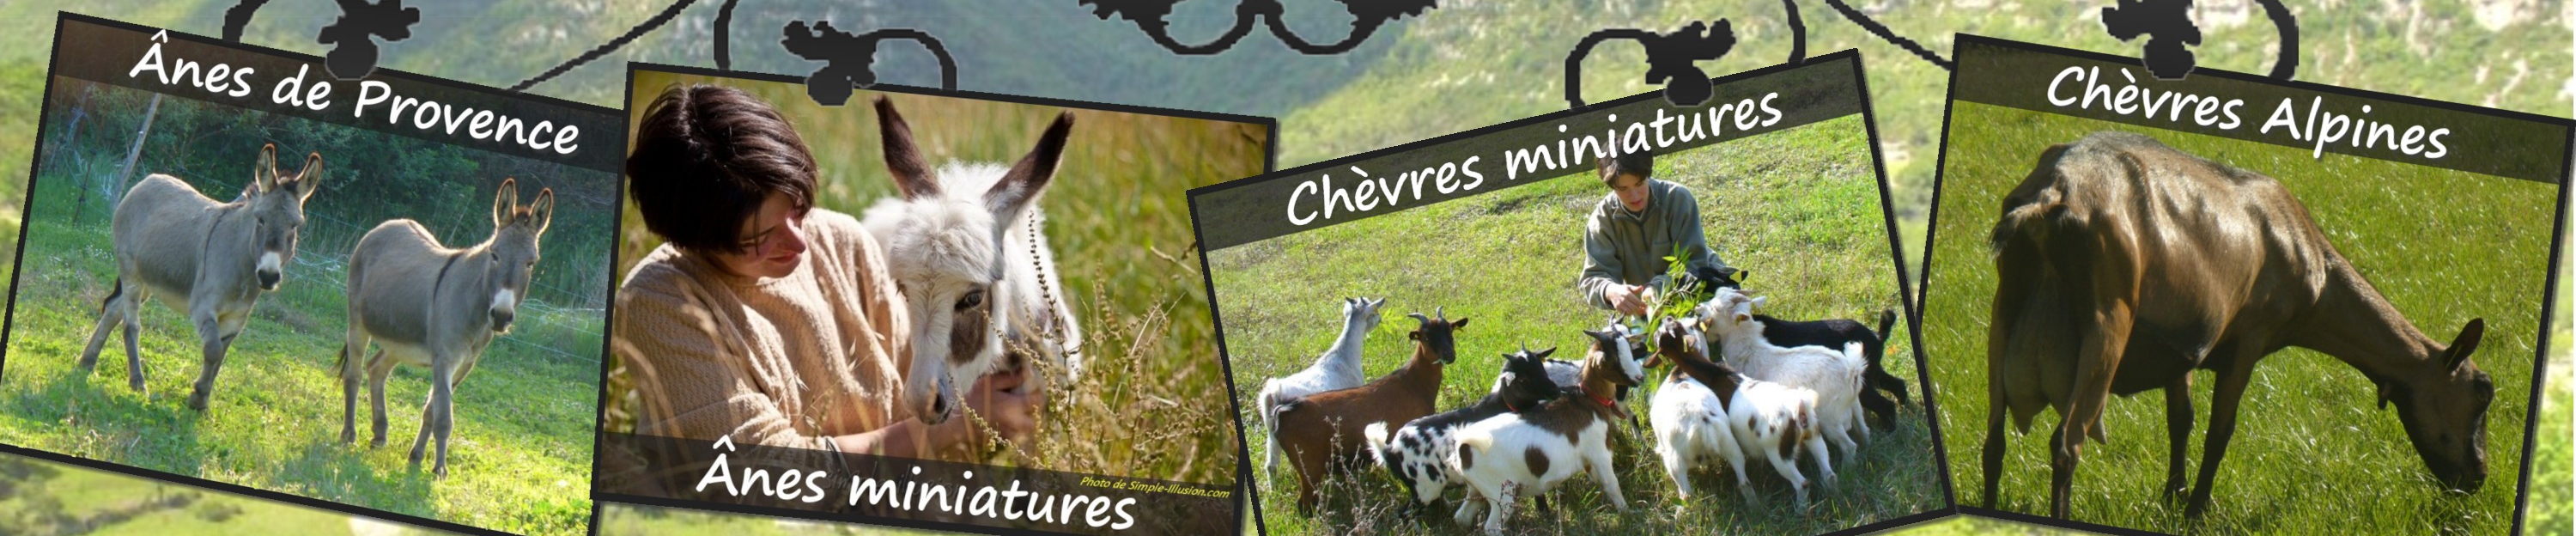 www.ferme-des-tourelles.net - Suite pastoralisme minichèvres 2015